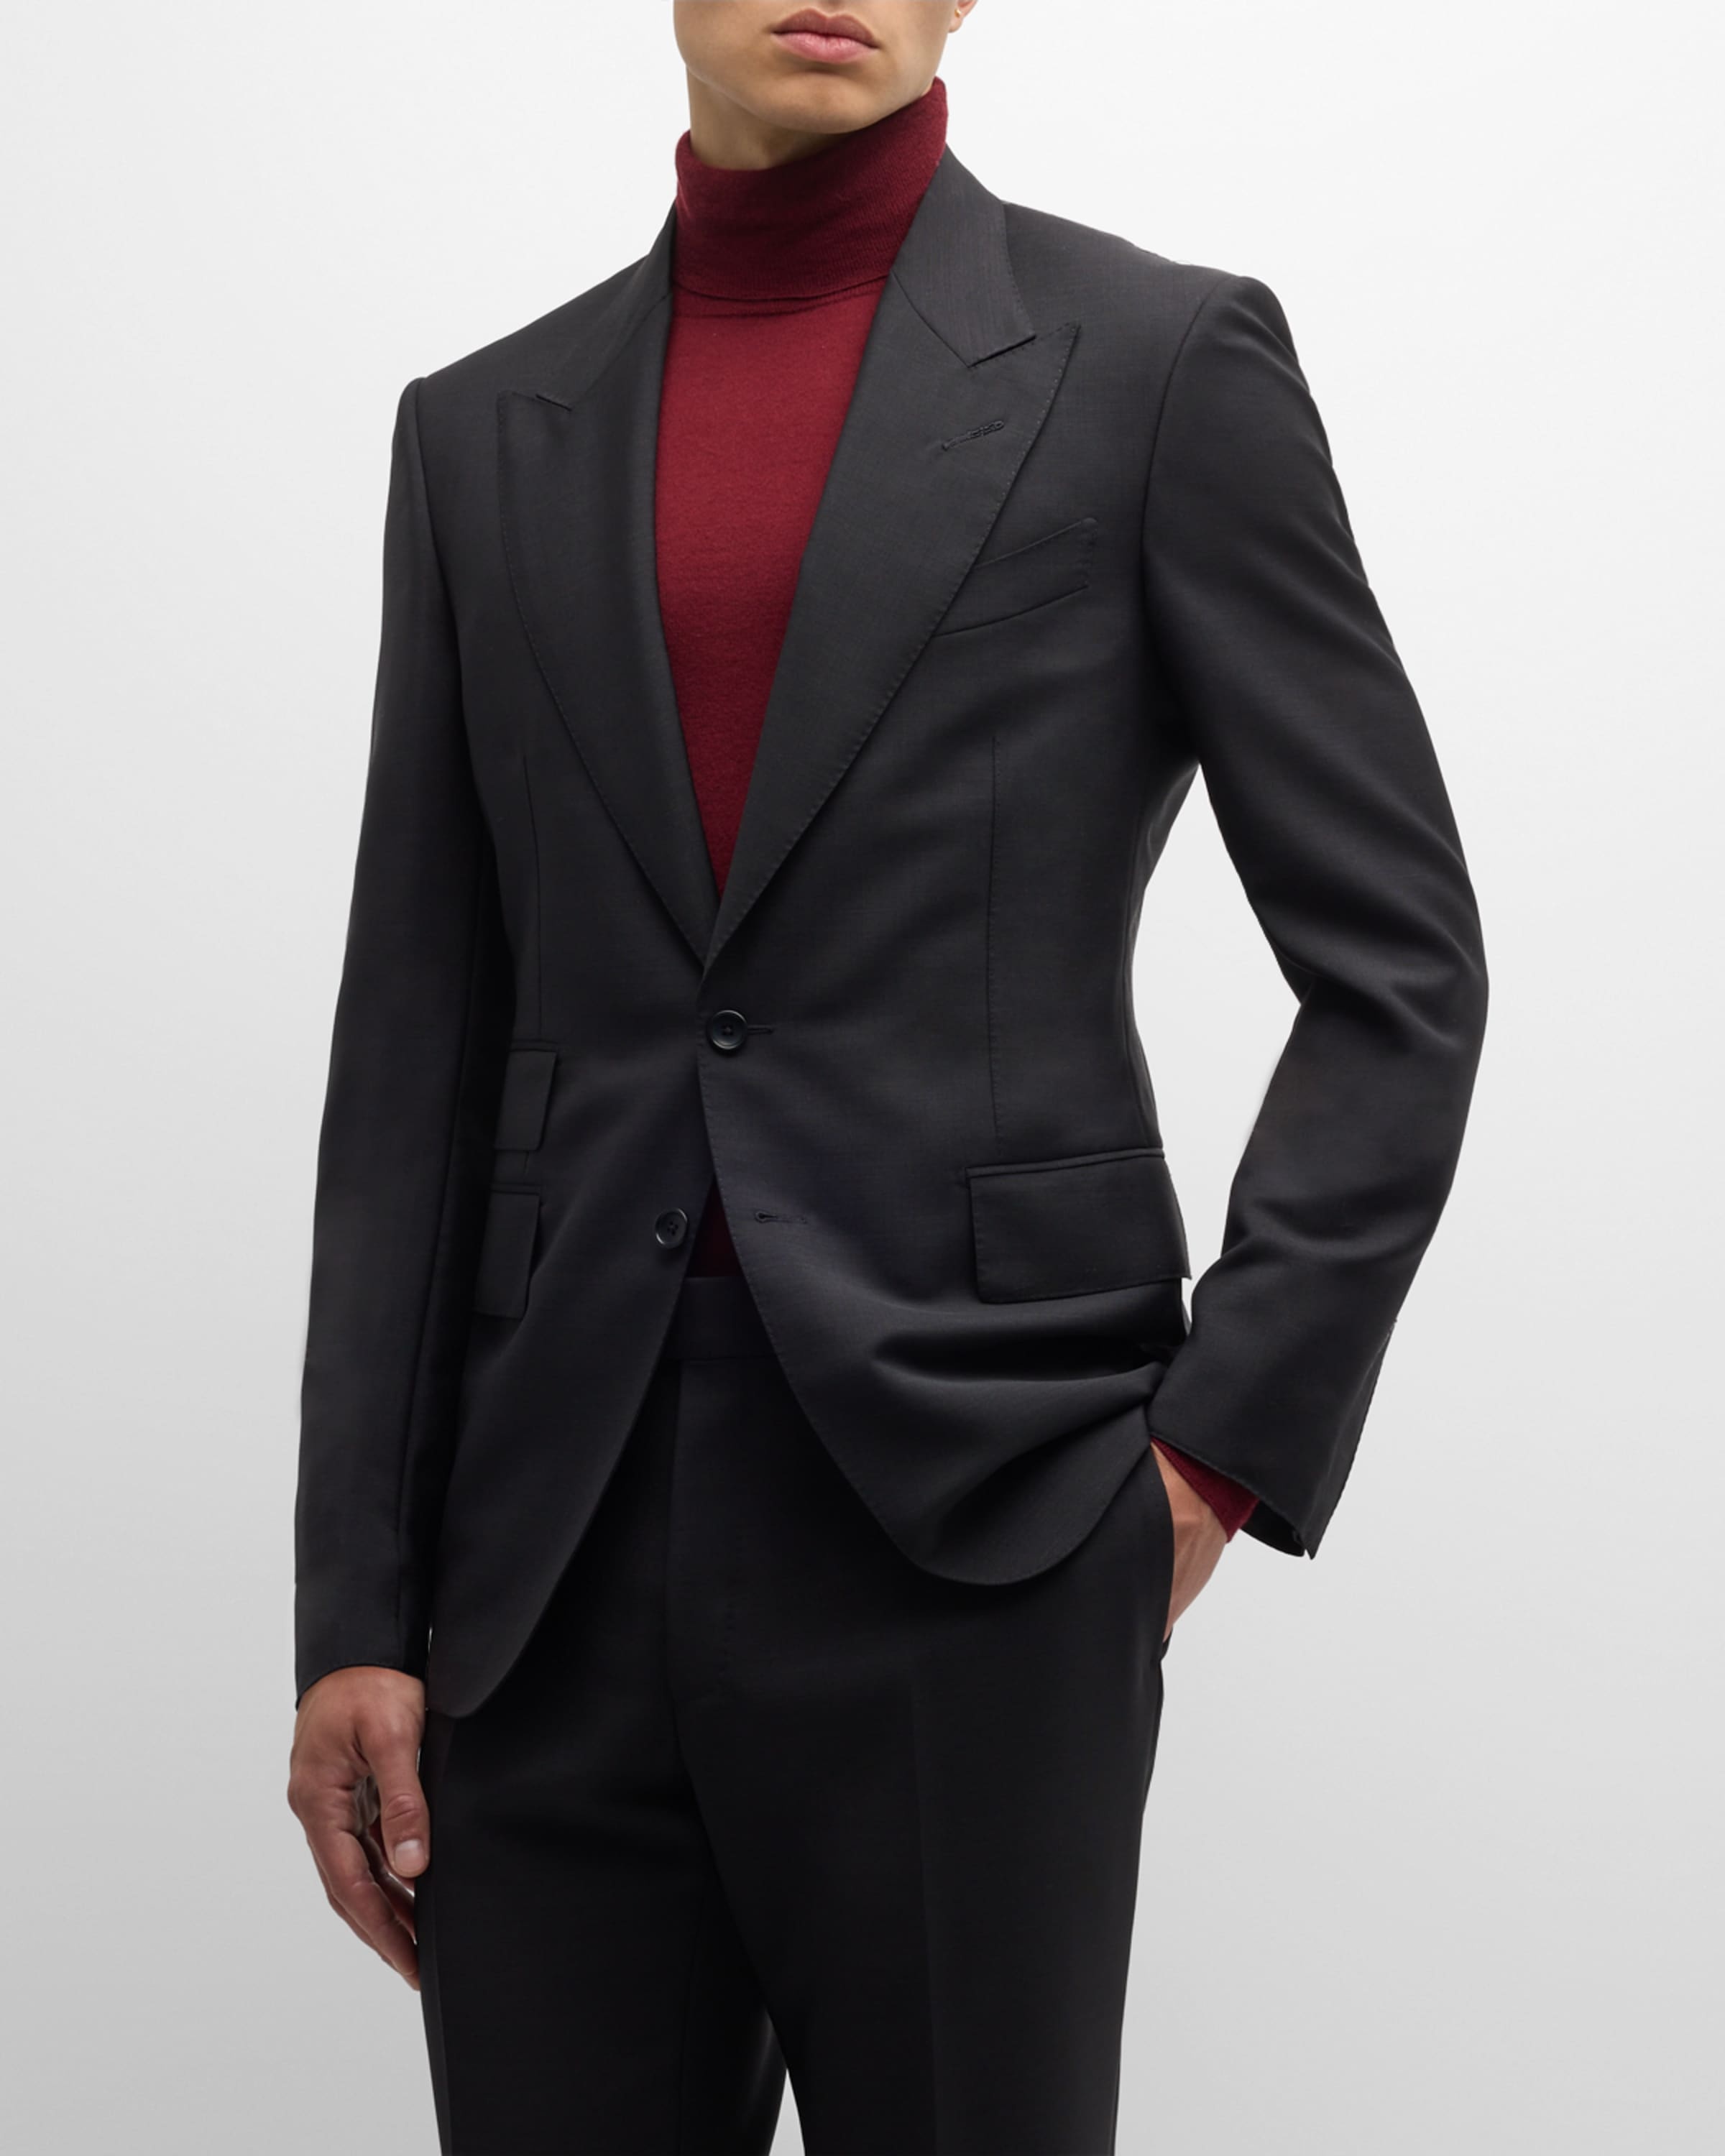 Men's Shelton Solid Mohair Suit - 1